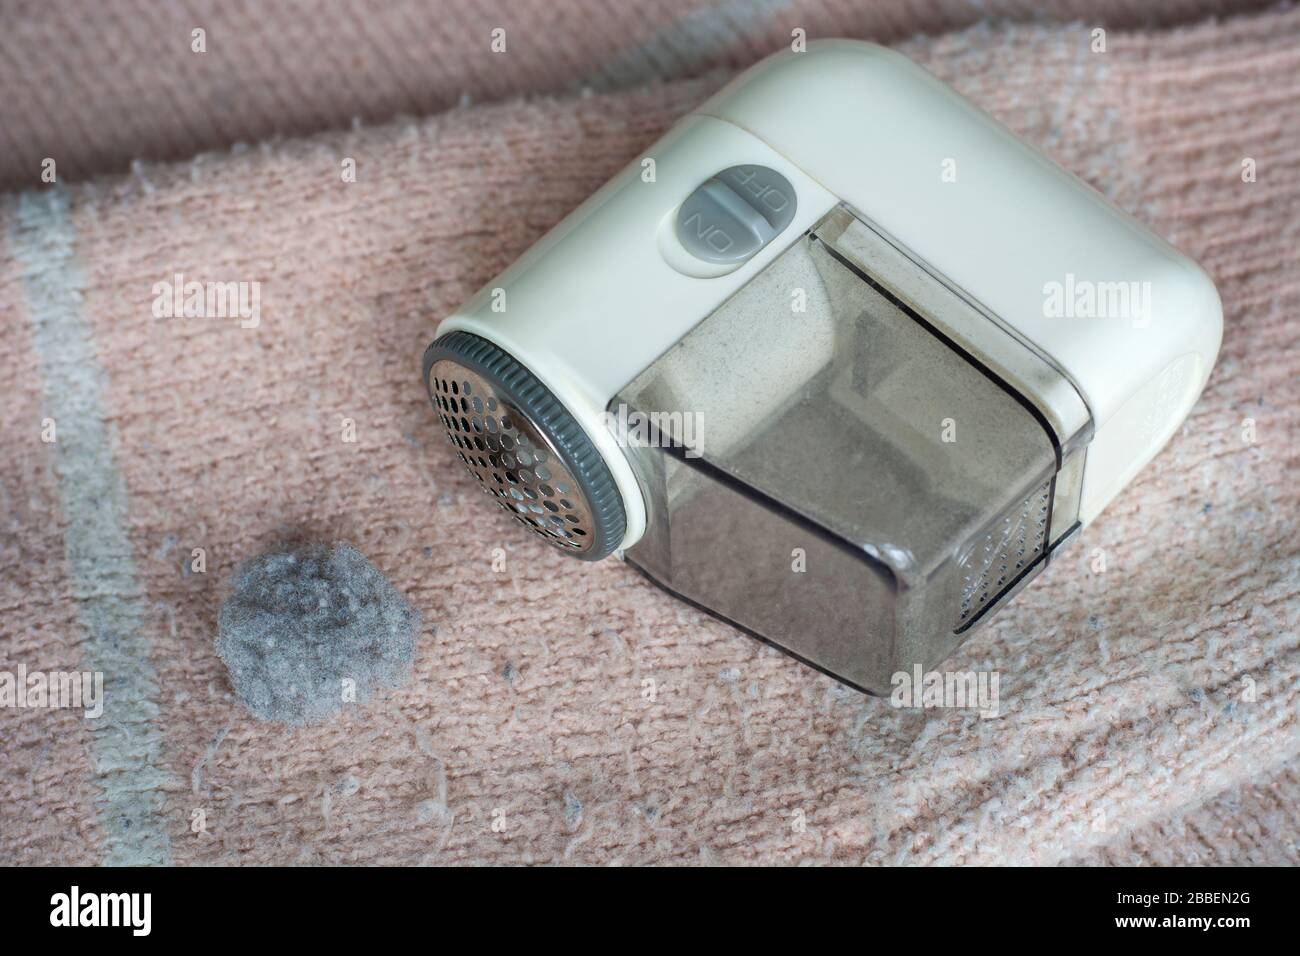 Pull pillé. Rasoir électrique portatif fuzz appareil de suppression pour enlever fuzz, les peluches et les pilules sur les vêtements. Banque D'Images